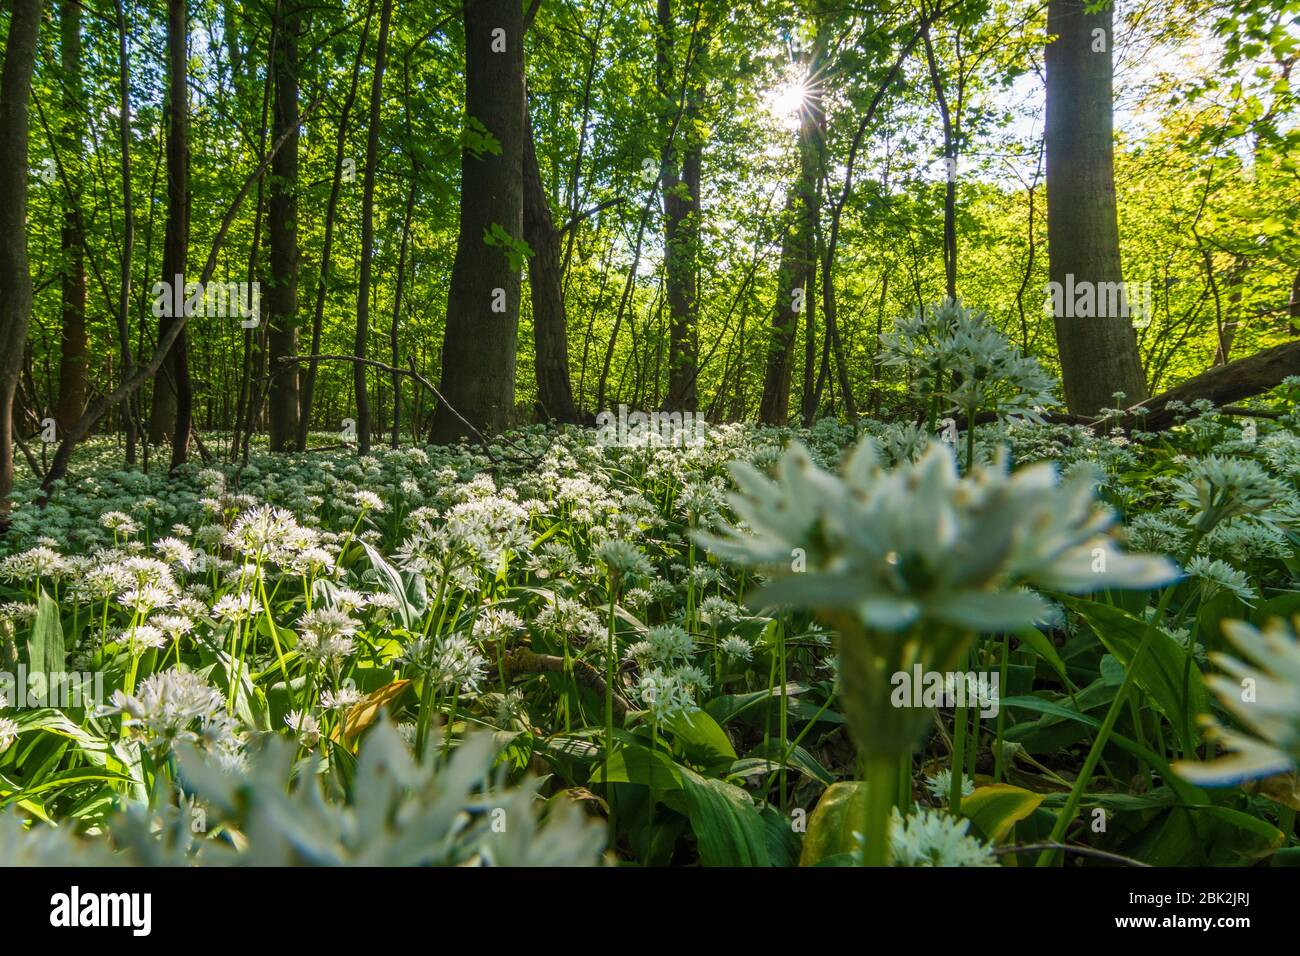 Nationalpark Donauauen, Donau-Auen Nationalpark: Blühender Bärlauch (Allium ursinum) im Nationalpark Donauauen, Bärlauch, Bäume, Dschungel, Urzeit Stockfoto